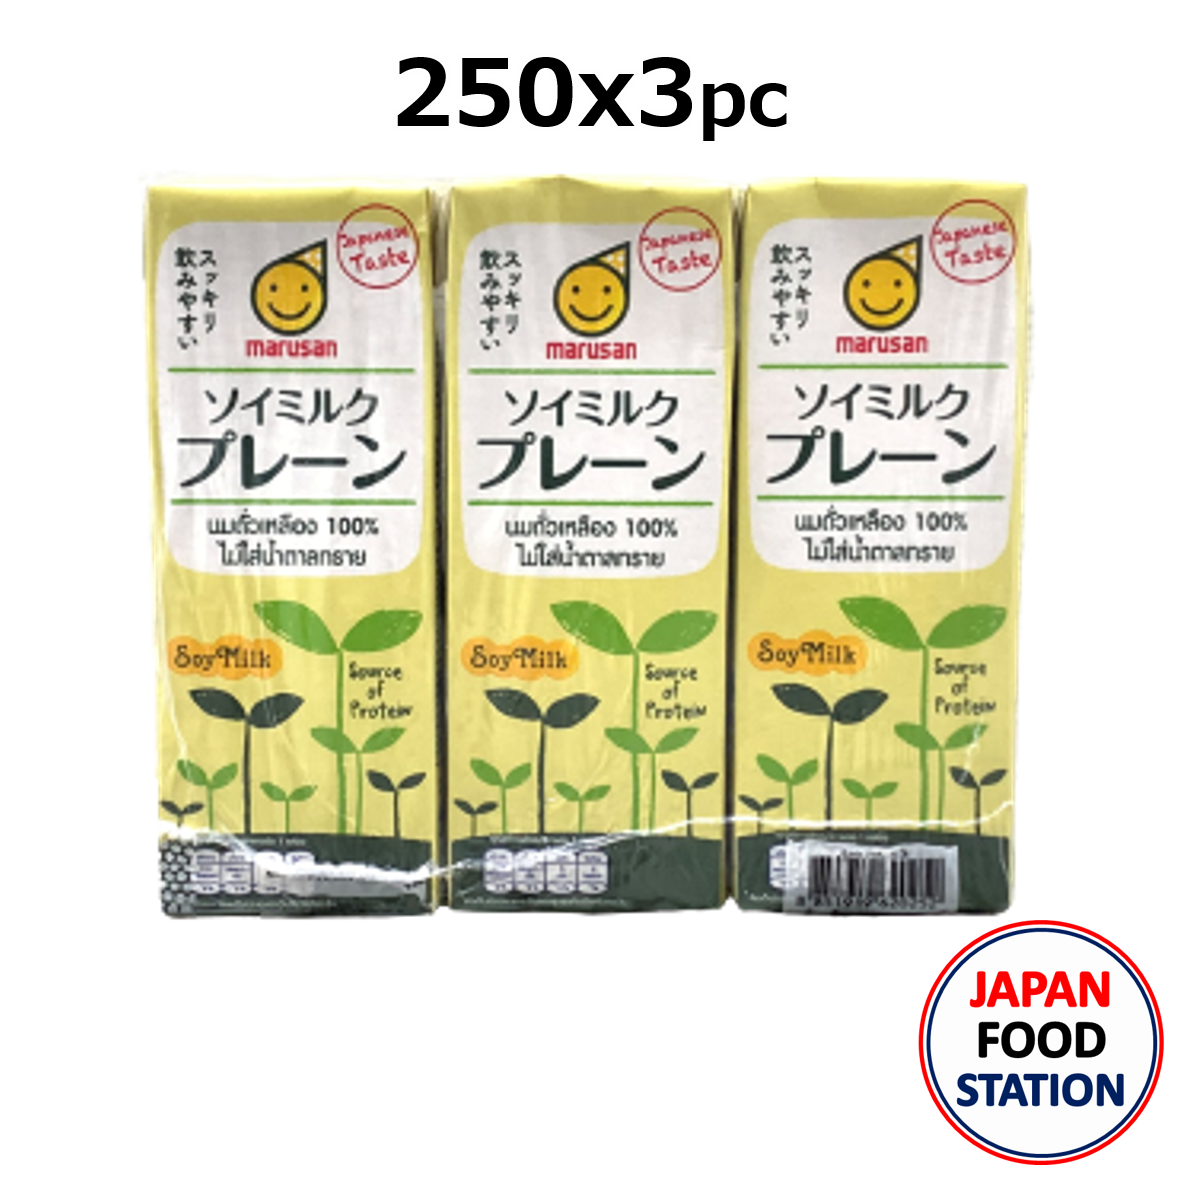 MARUSAN SOY MILK (17187) นมถั่วเหลืองญี่ปุ่น 100 % สูตรไม่มีน้ำตาล(ไม่หวาน) ขนาด 250mlX3PC JAPANESE SOY MILK